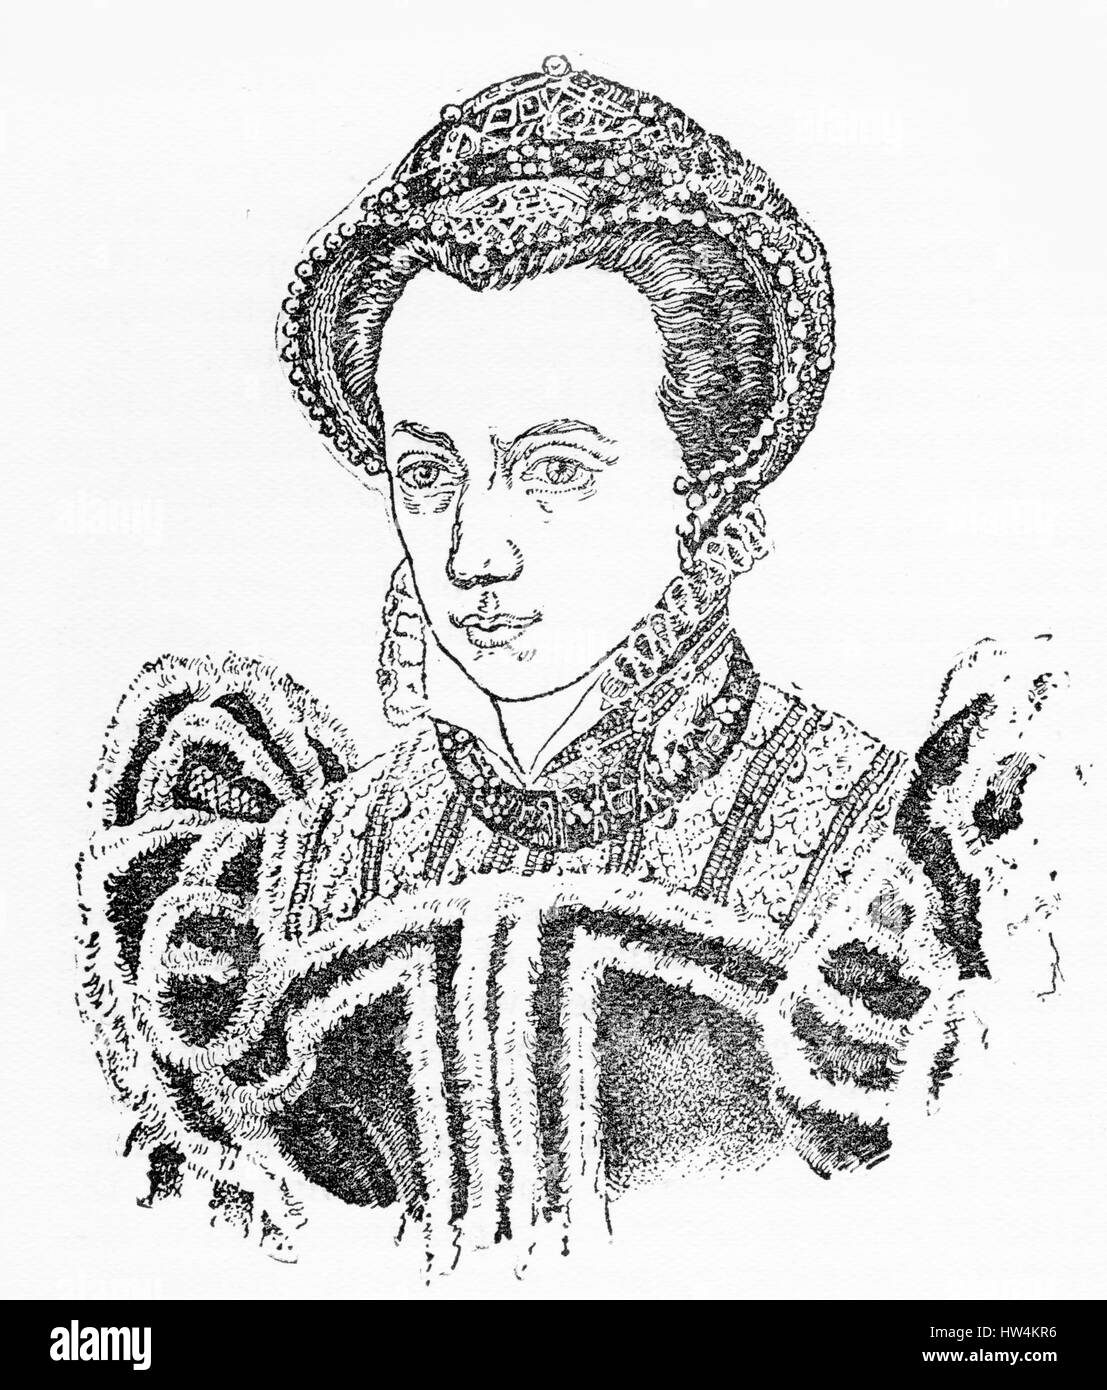 Kupferstich von Mary Tudor, Königin von England. (1516 - 1558) von einer ursprünglichen Gravur in der Historiker Weltgeschichte, 1908 Stockfoto